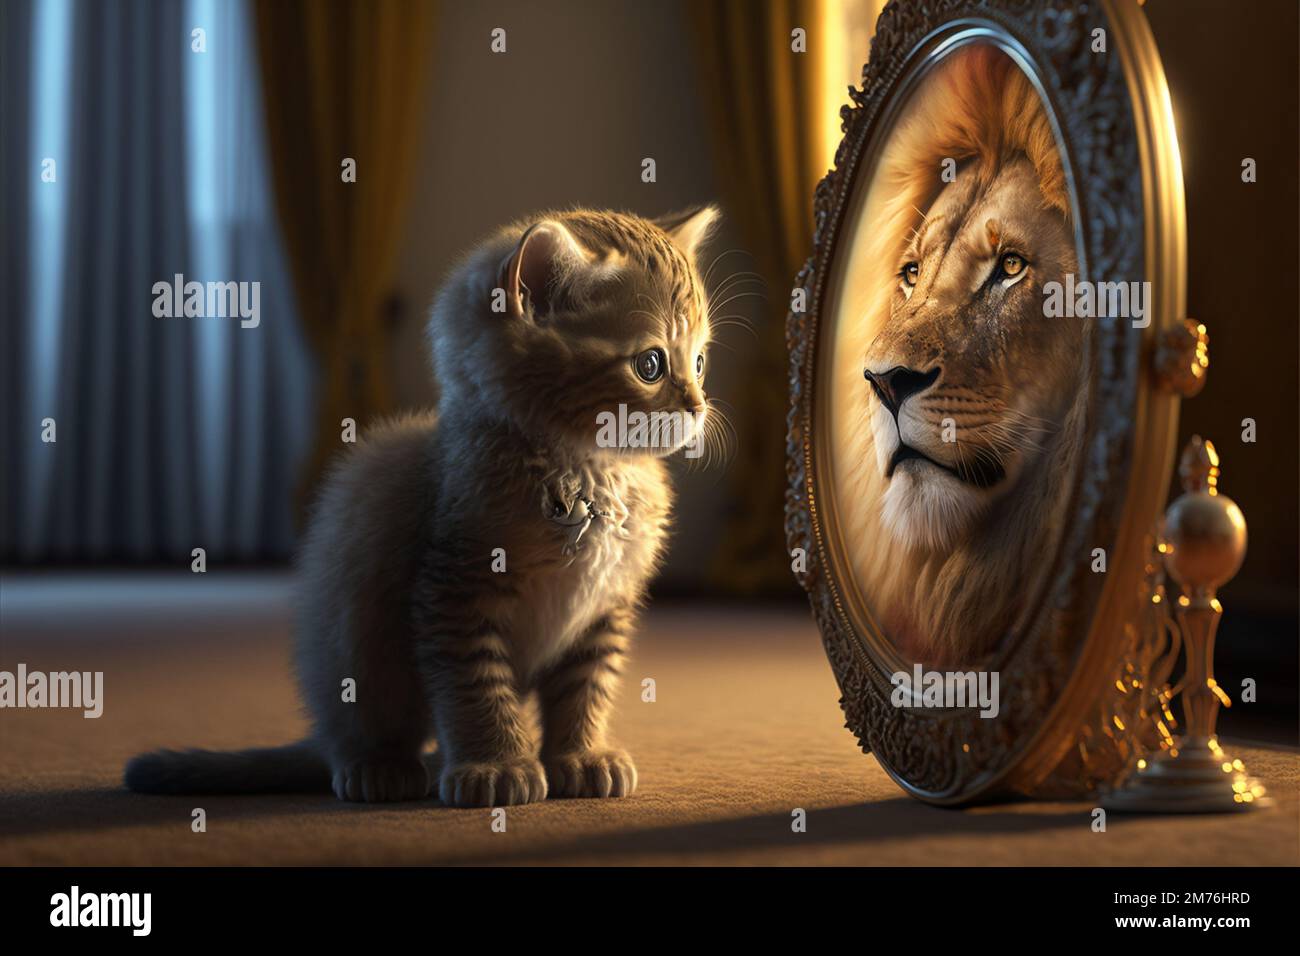 Cat lion mirror immagini e fotografie stock ad alta risoluzione - Alamy